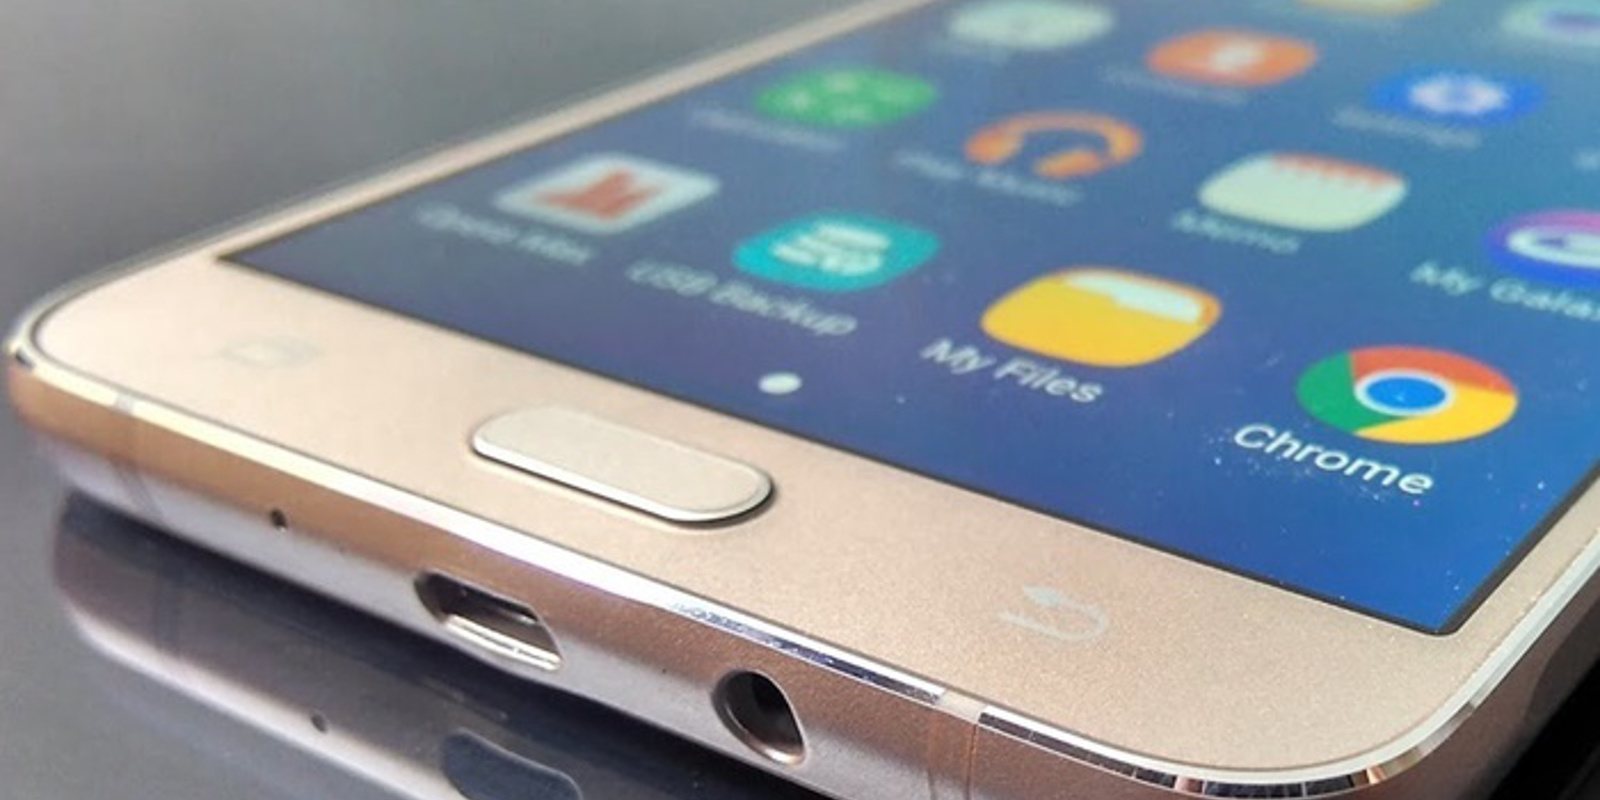 Samsung Galaxy J7: ya sabemos todo sobre los nuevos smartphones de Samsung